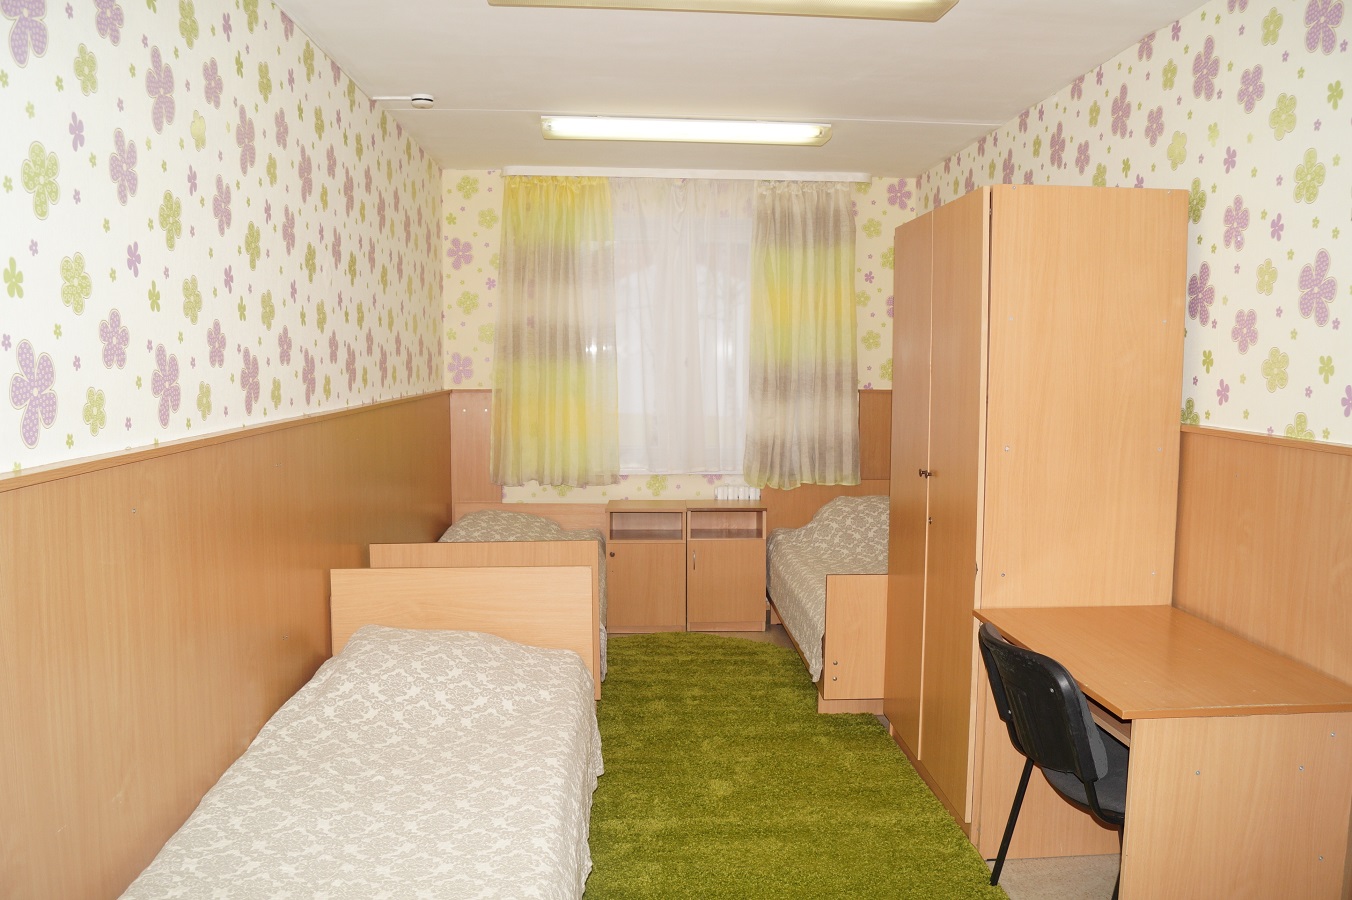 Жемчужина санаторий витебская область комнаты для детей